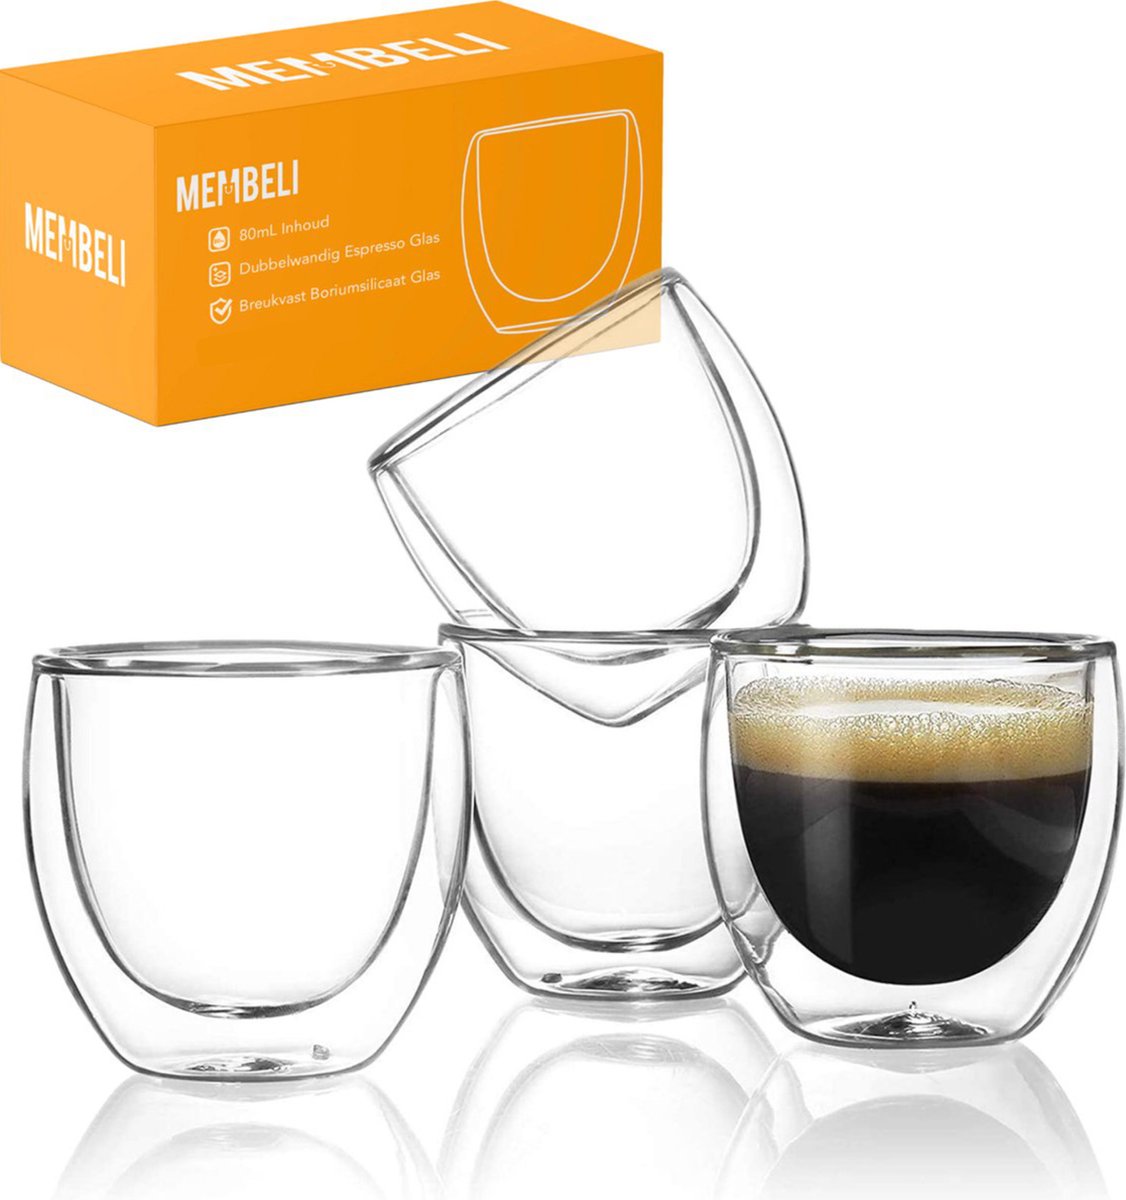 Membeli Espresso Koffie Kopjes set van 4 - Dubbelwandig Espresso Glazen zonder Oor - 80 mL - Koffiekopjes